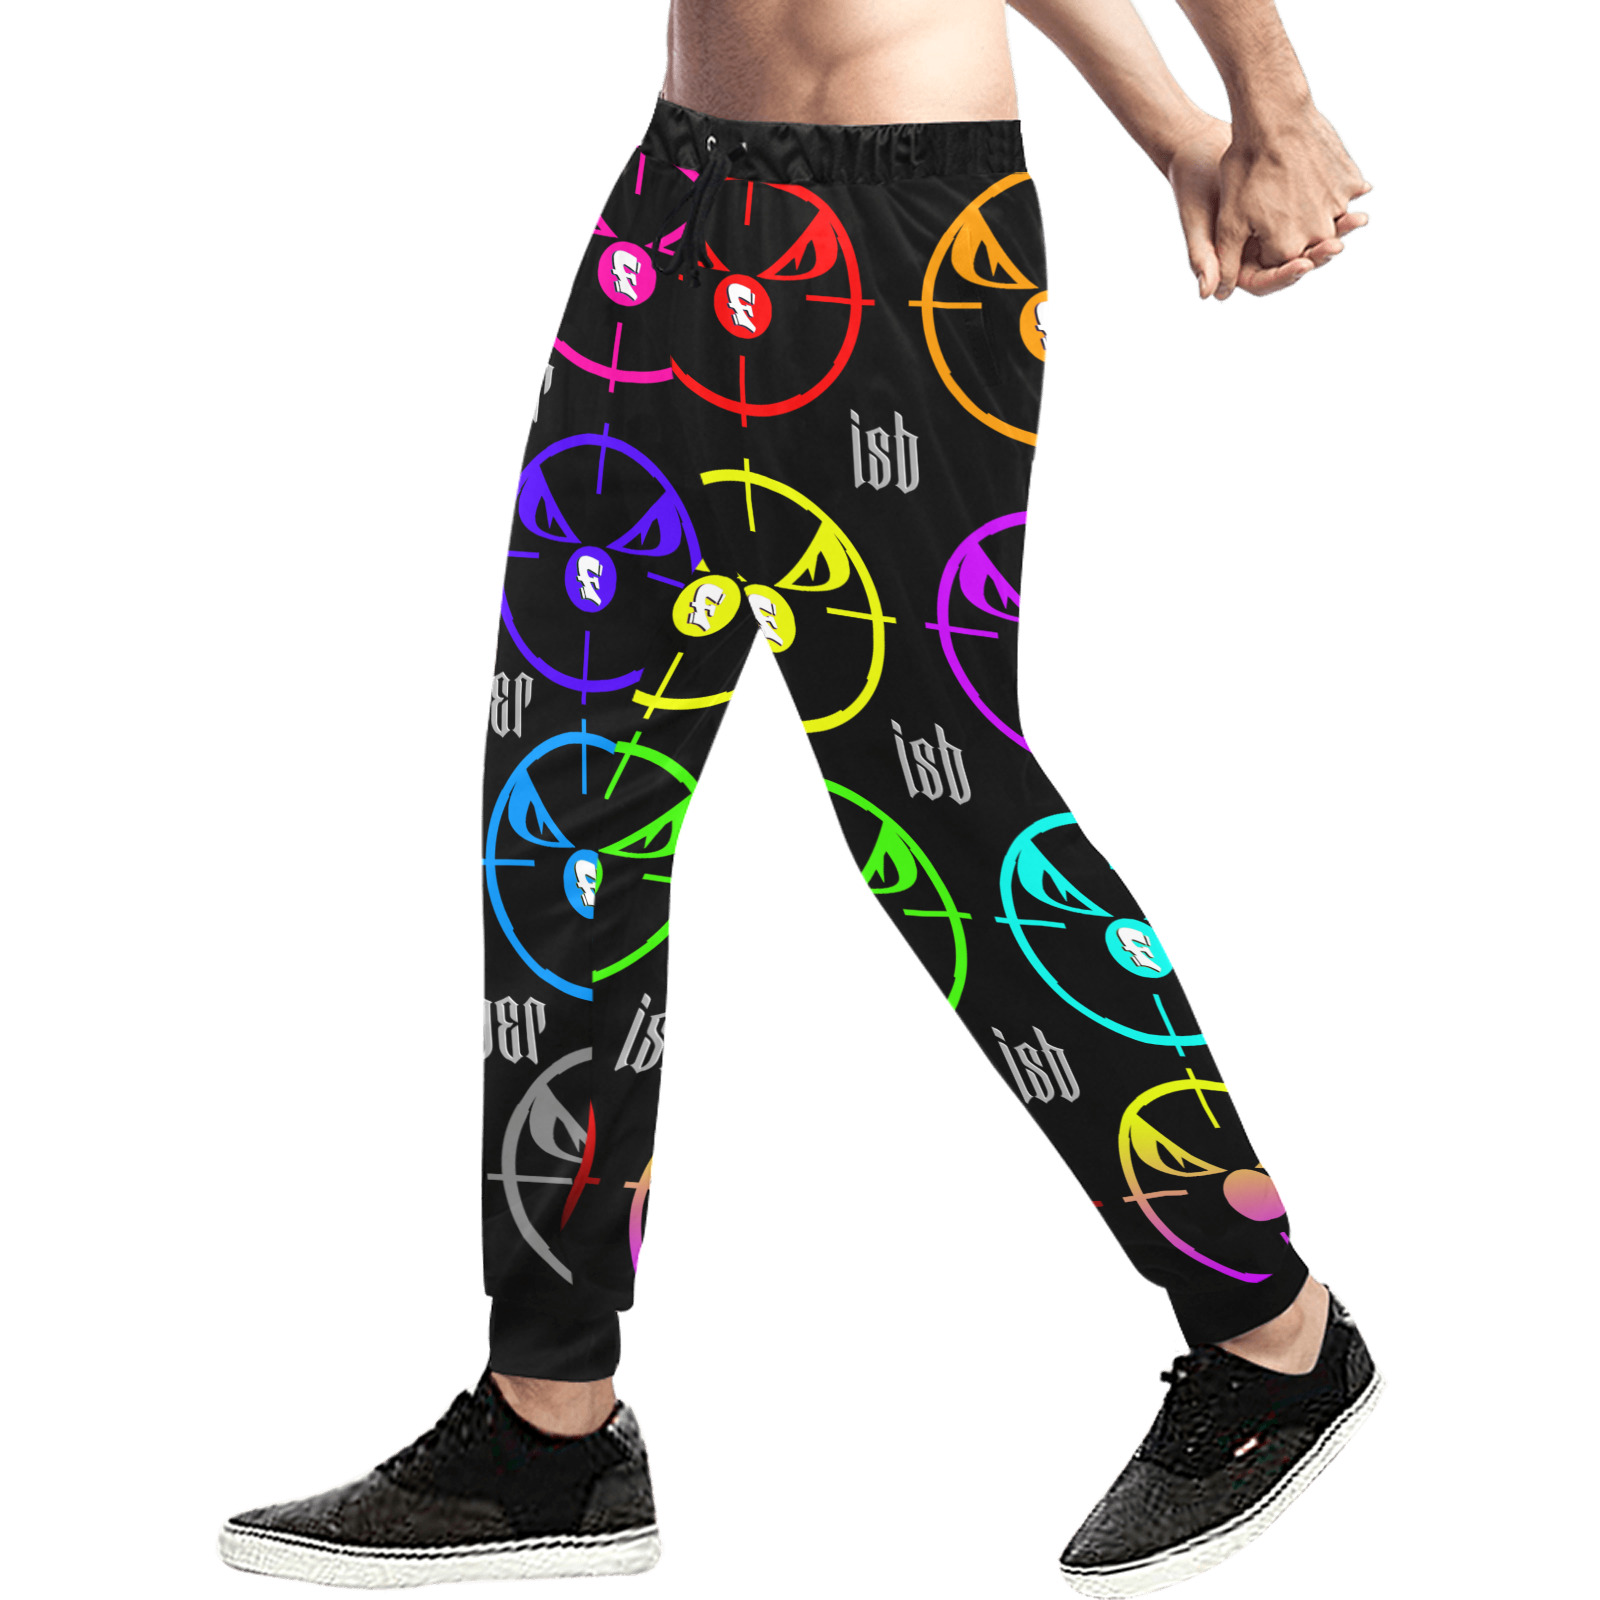 ISB-SNIPER pants Men's All Over Print Sweatpants (Model L11)